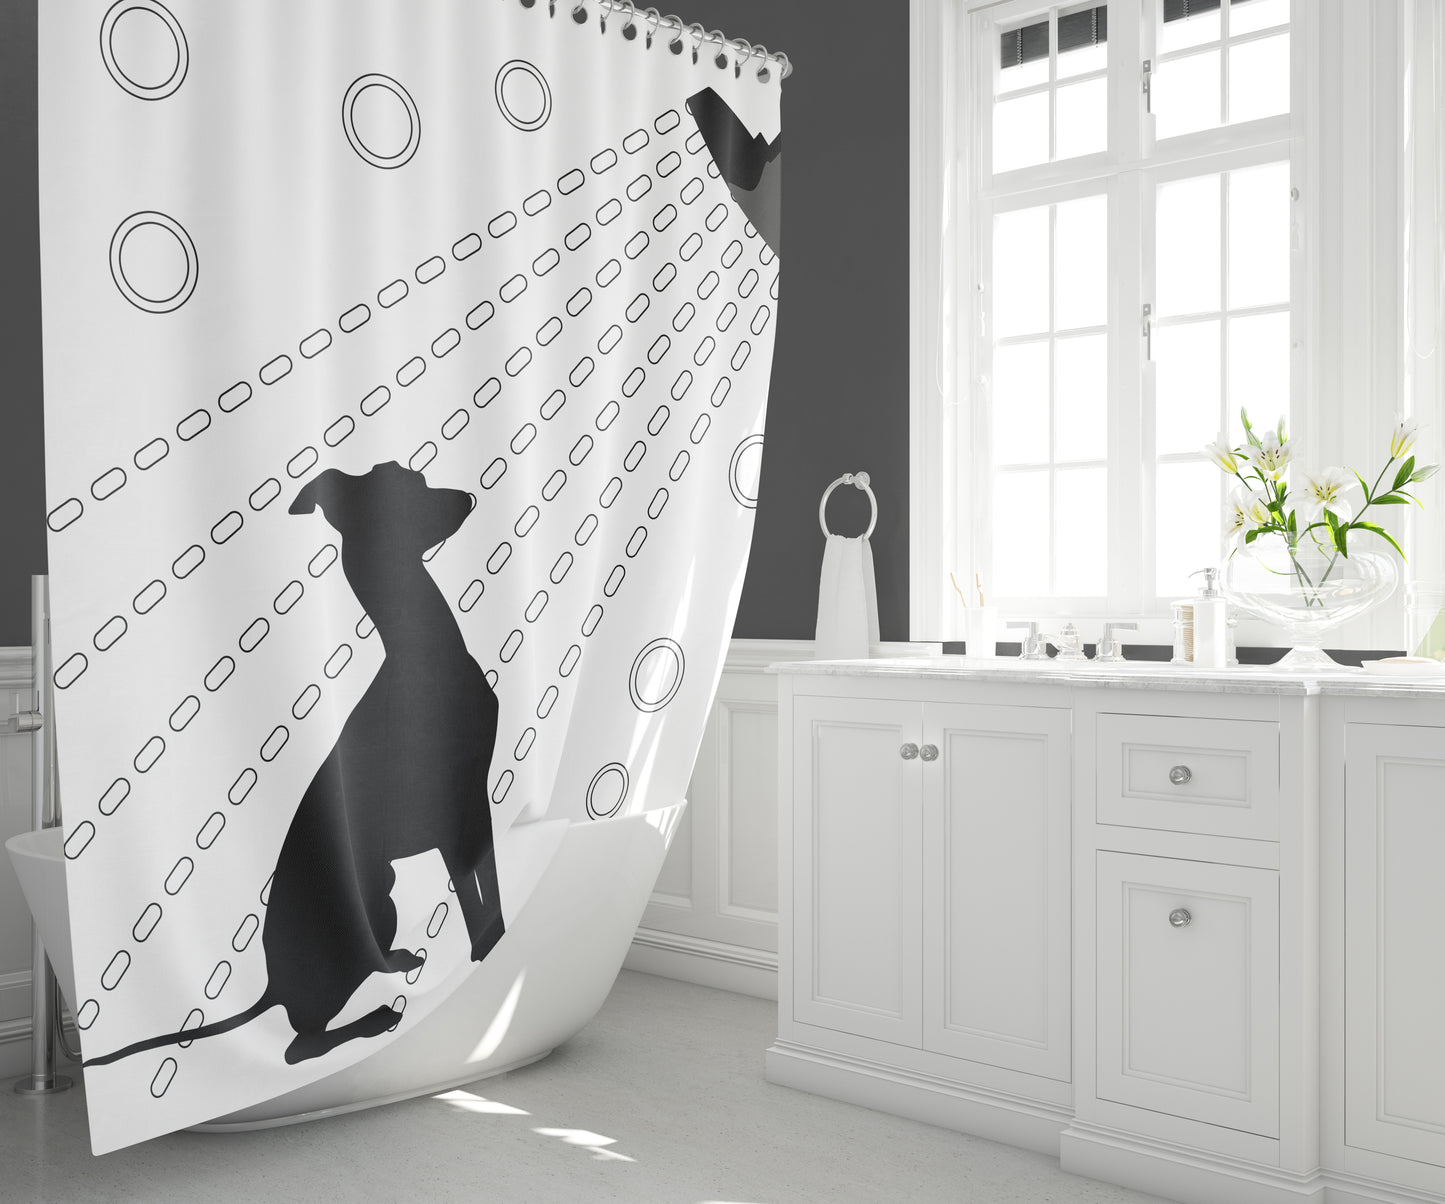 Greyhound With Shower Head Shower Curtain